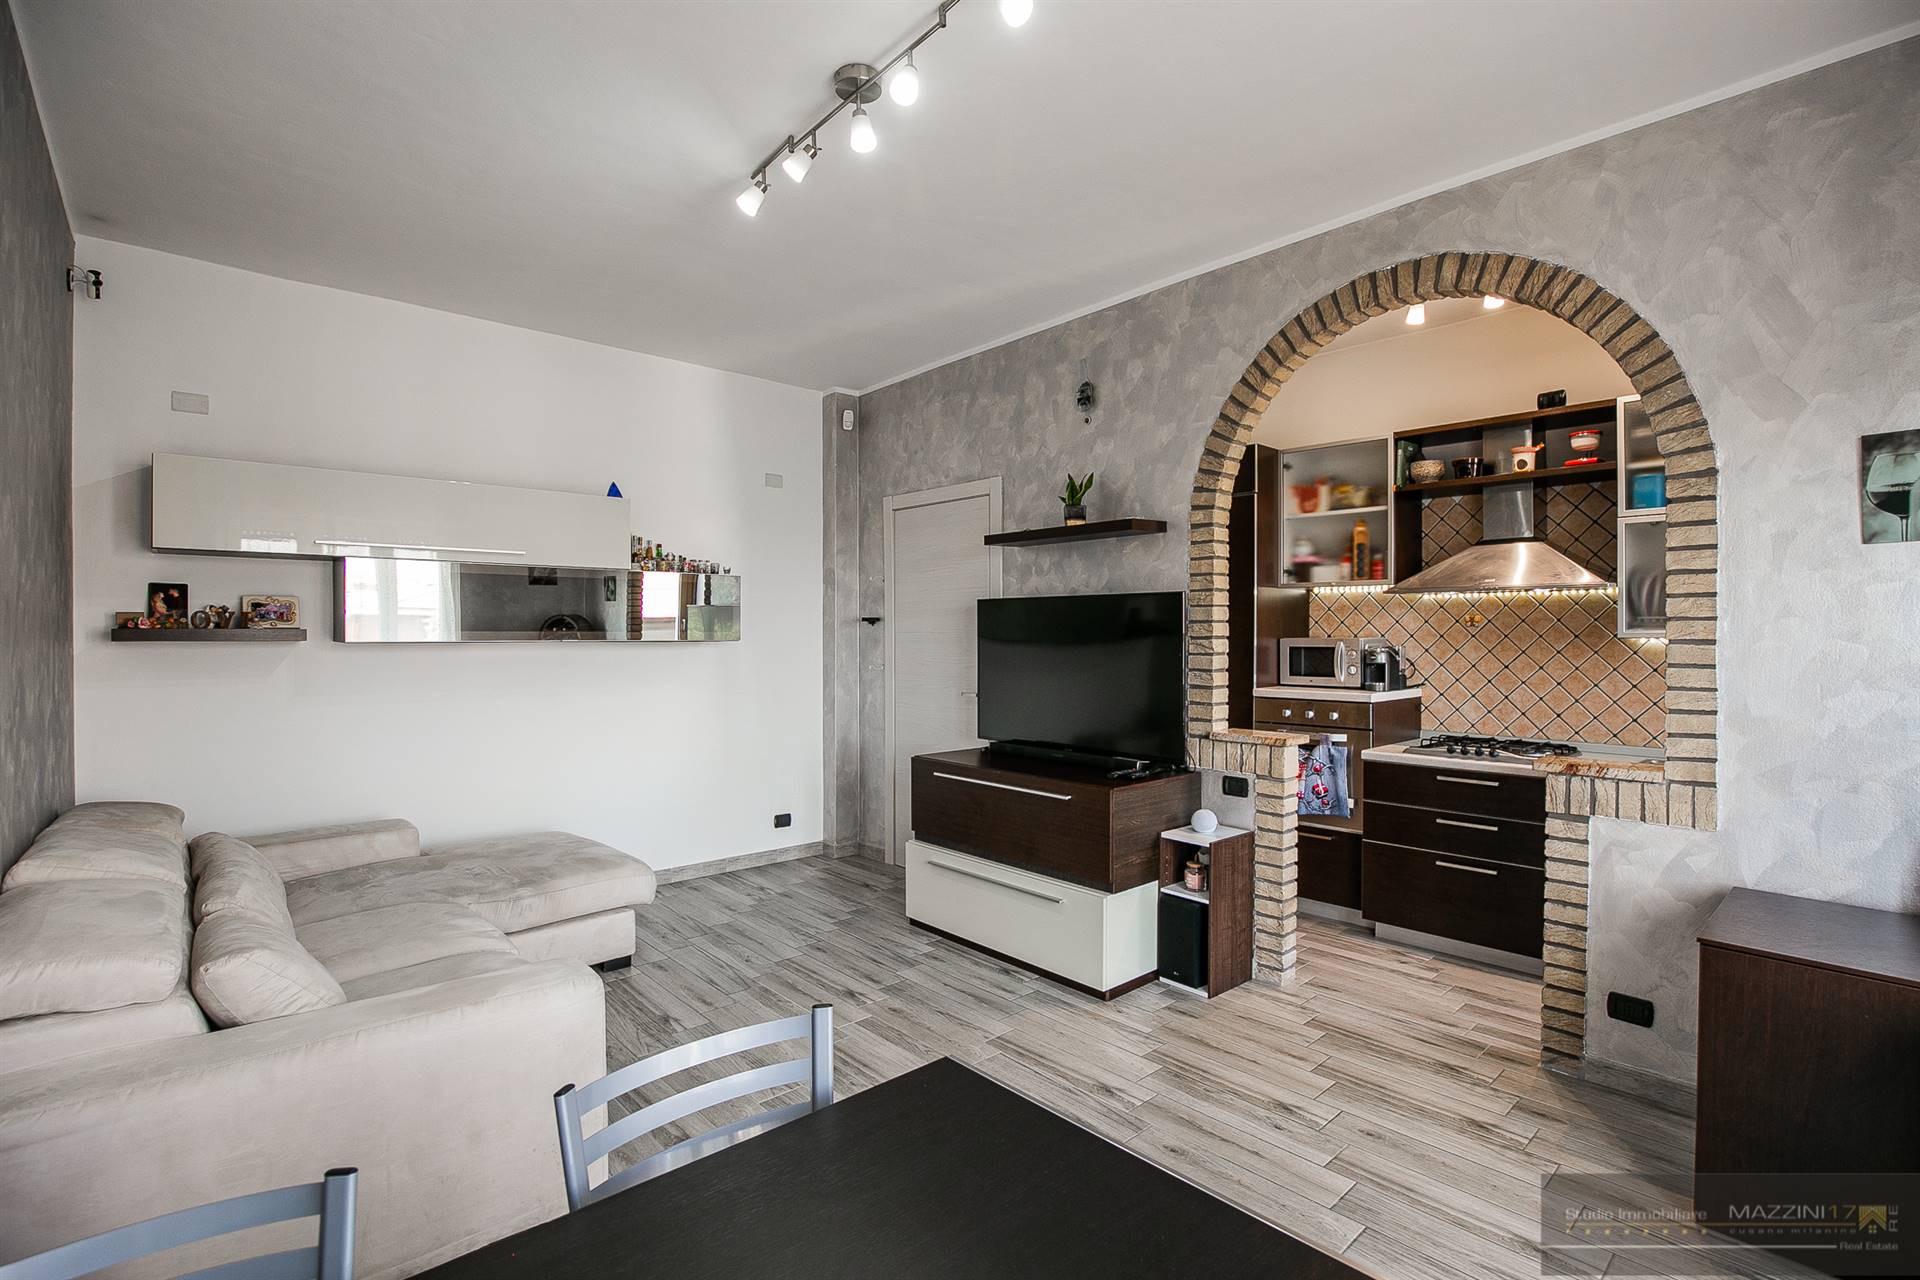 Appartamento in vendita a Senago, 2 locali, prezzo € 137.000 | PortaleAgenzieImmobiliari.it